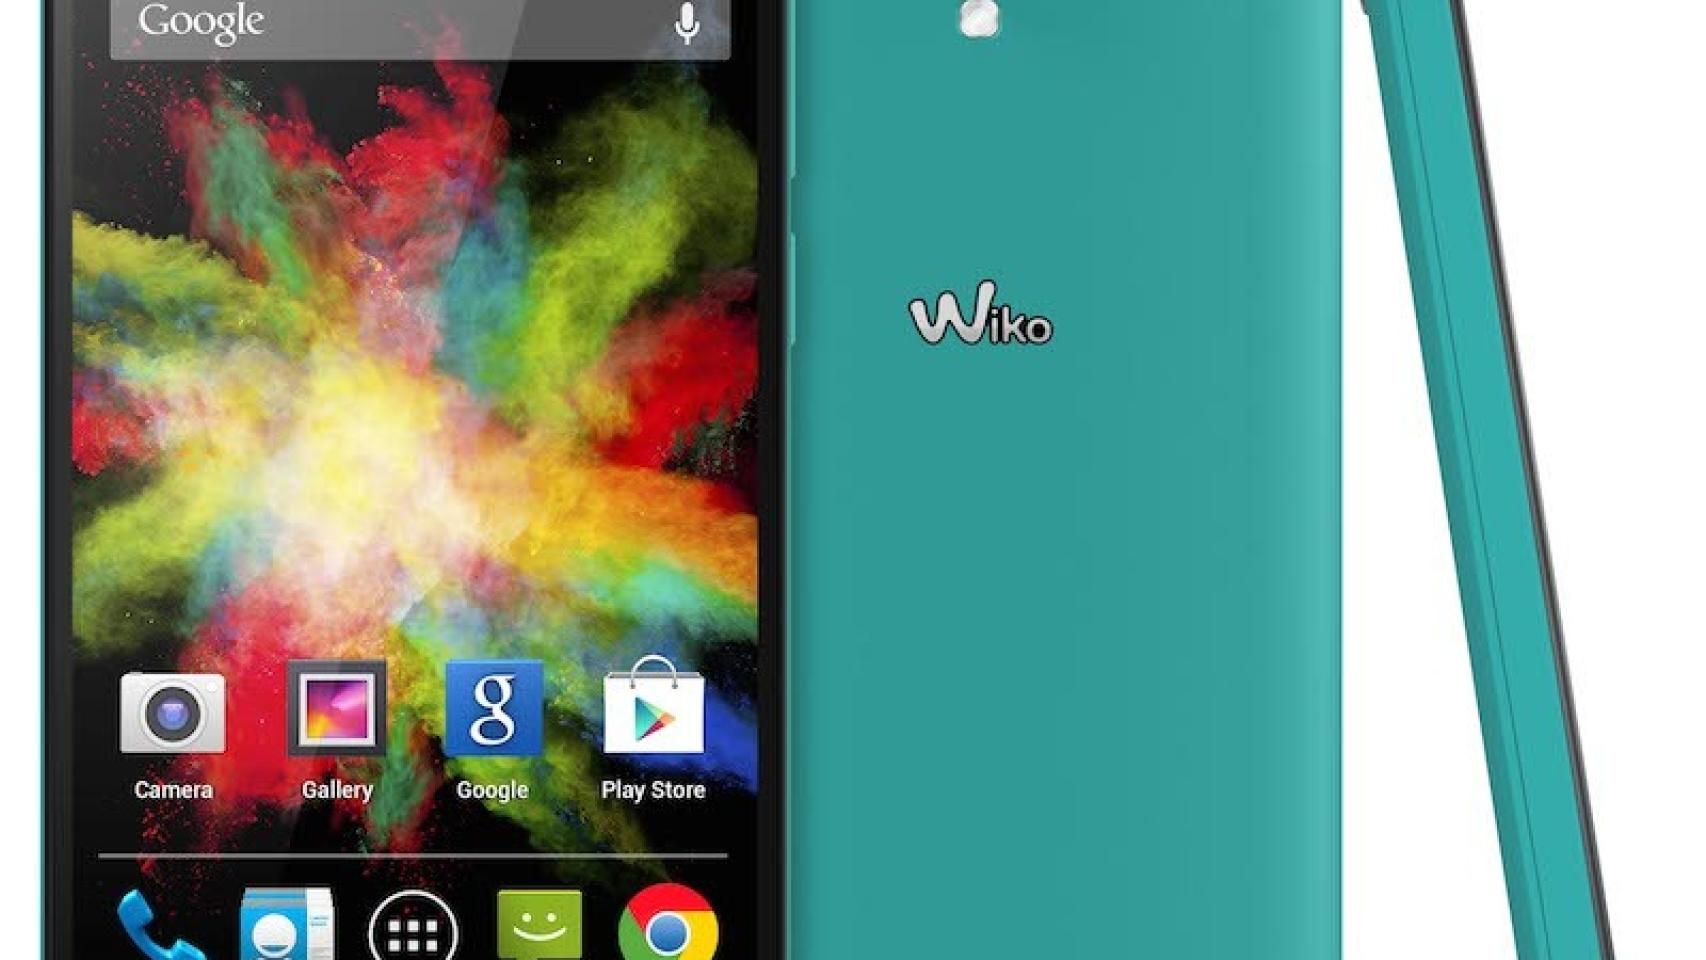 Wiko BLOOM: Pantalla 4,7″, 1GB de RAM, Dual-SIM y Android 4.4 KitKat por 129€